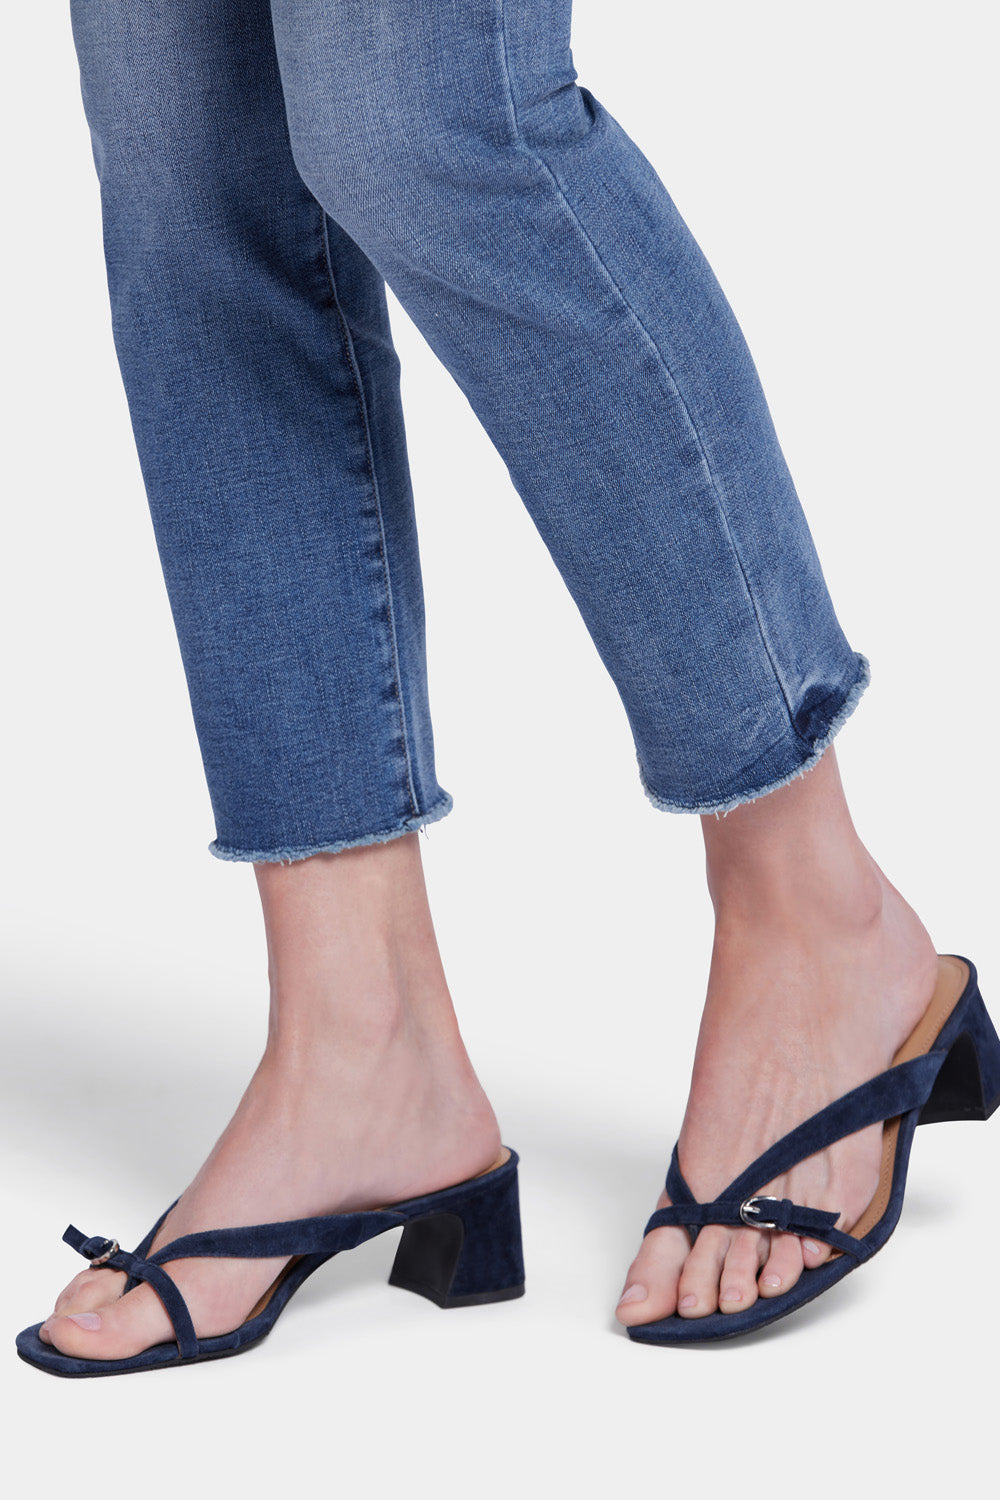 NYDJ Sheri Slim Ankle Jeans With Frayed Hems - Rockie